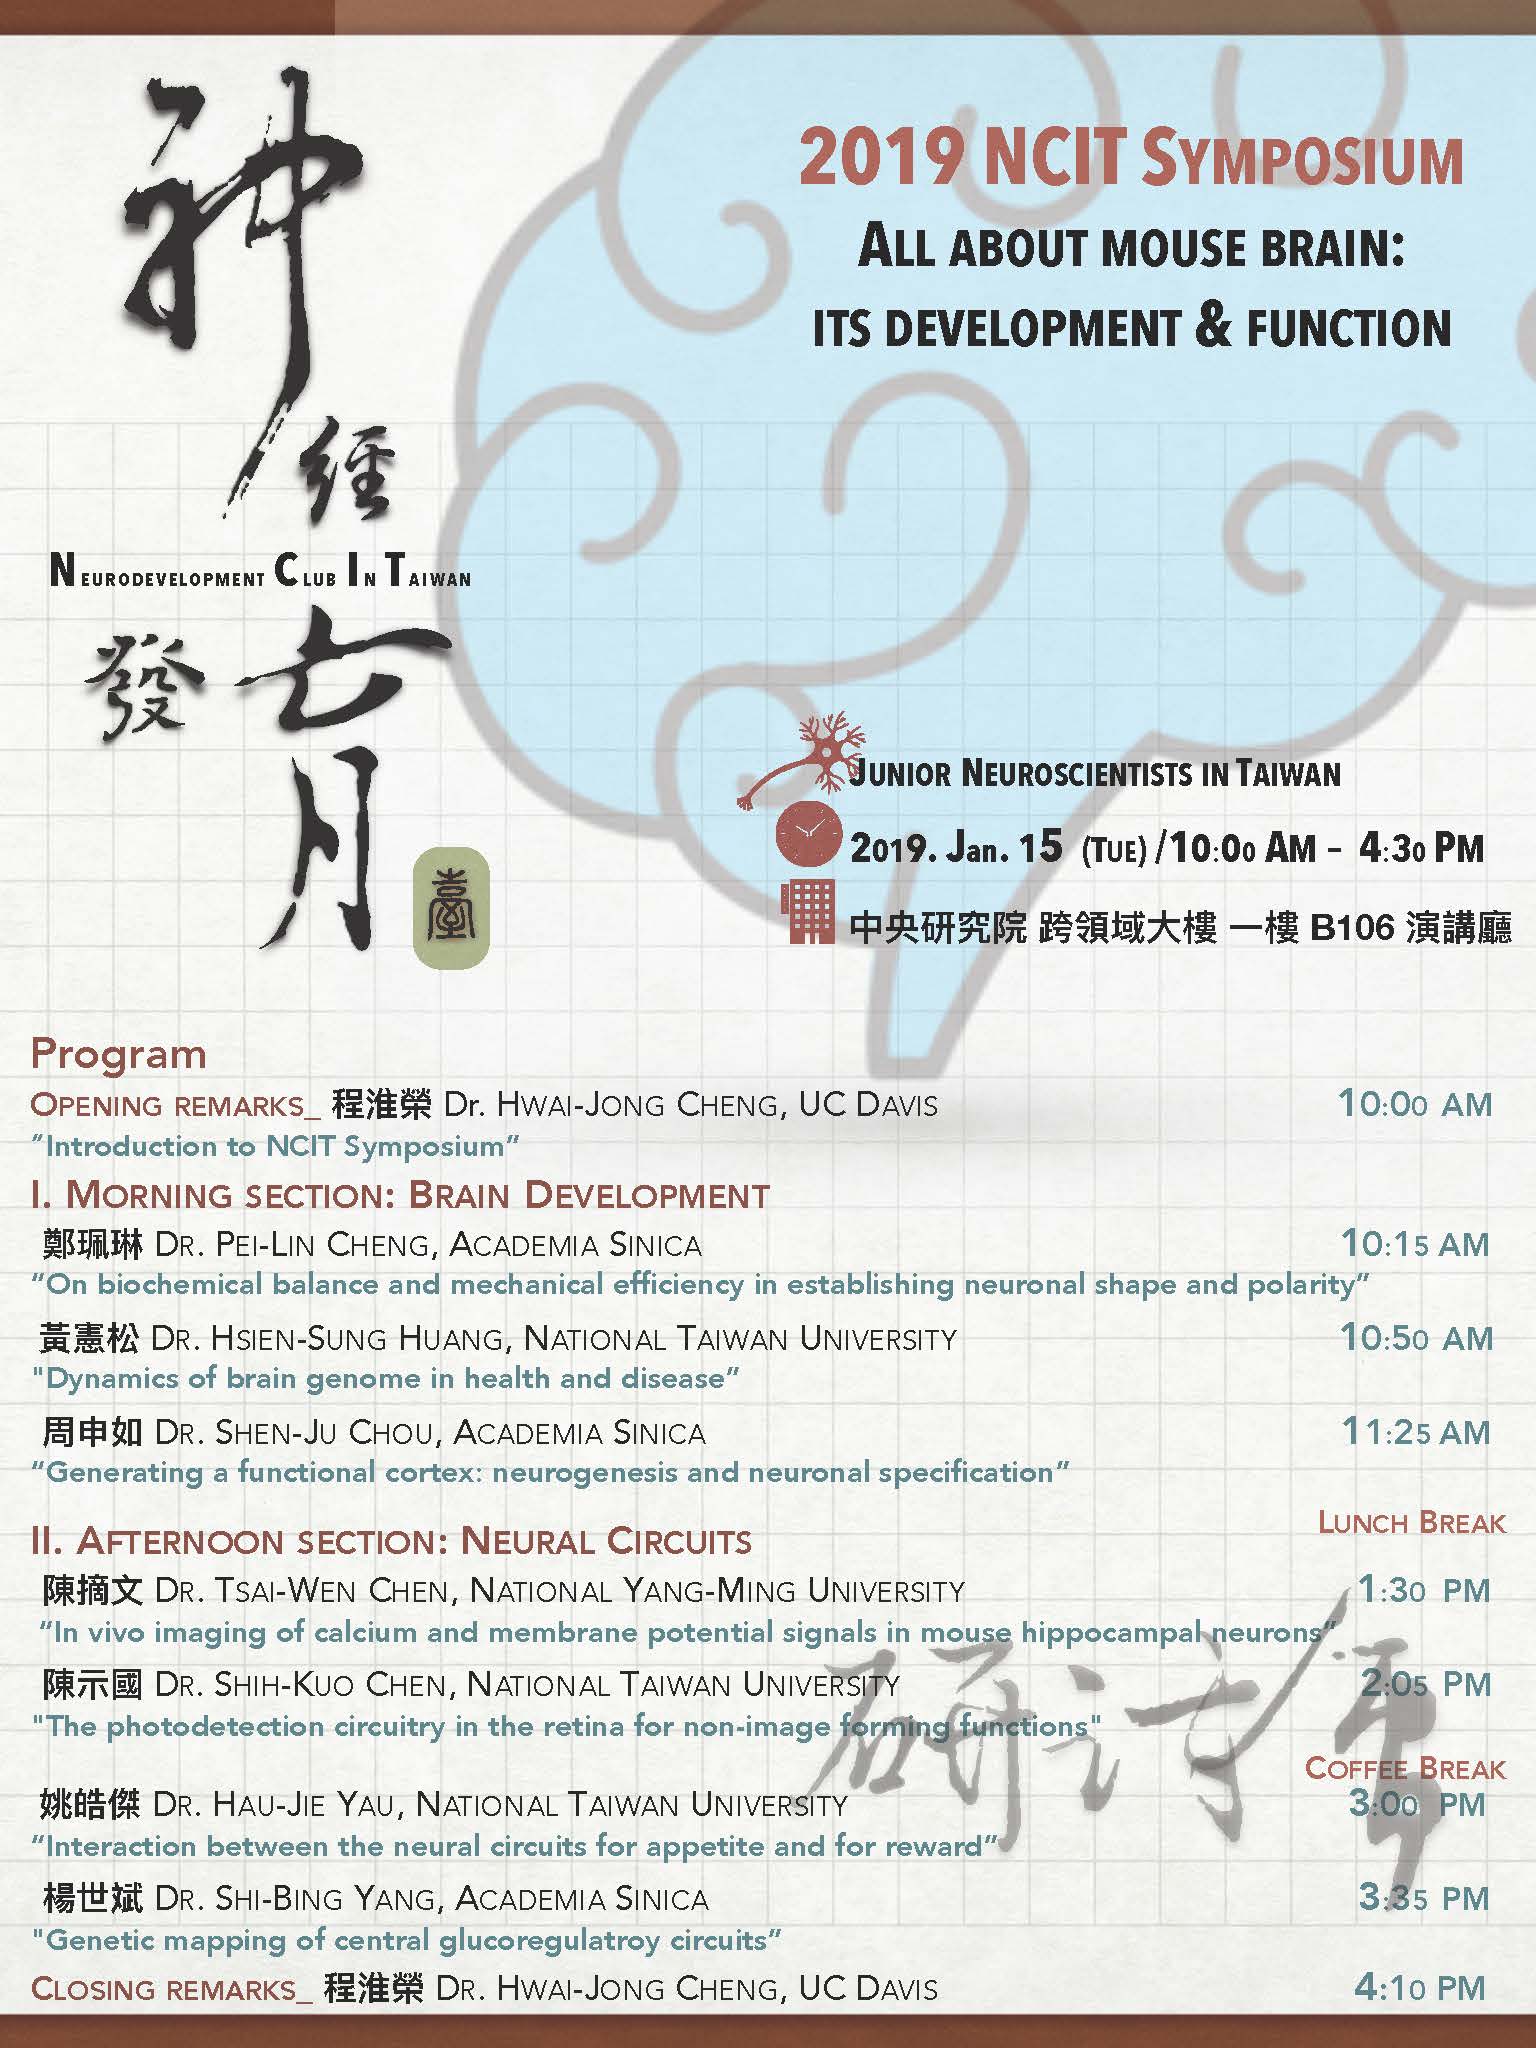 NCIT symposium Poster design